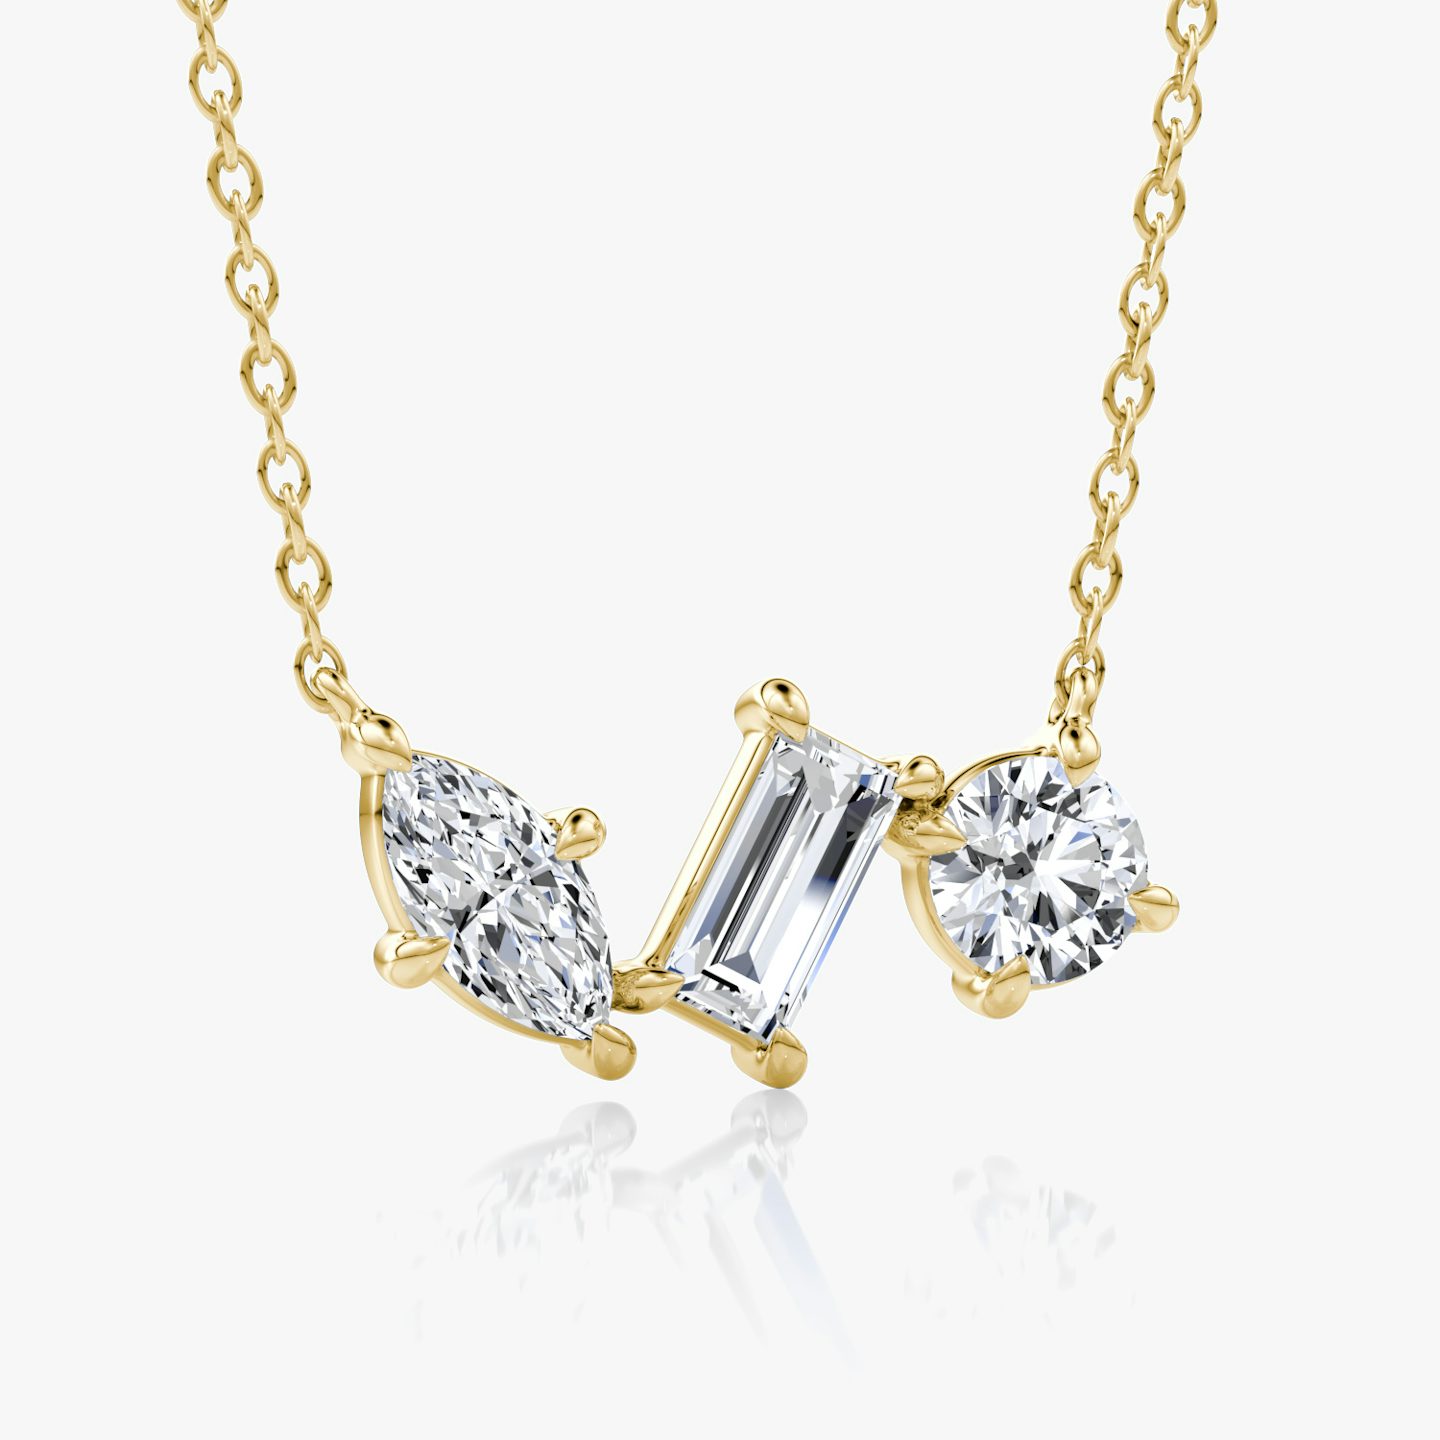 Collier Orion | Rond brillant, Baguette et Marquise | 14k | Or jaune 18 carats | Longueur de la chaîne: 16-18 | Taille des diamants: Original